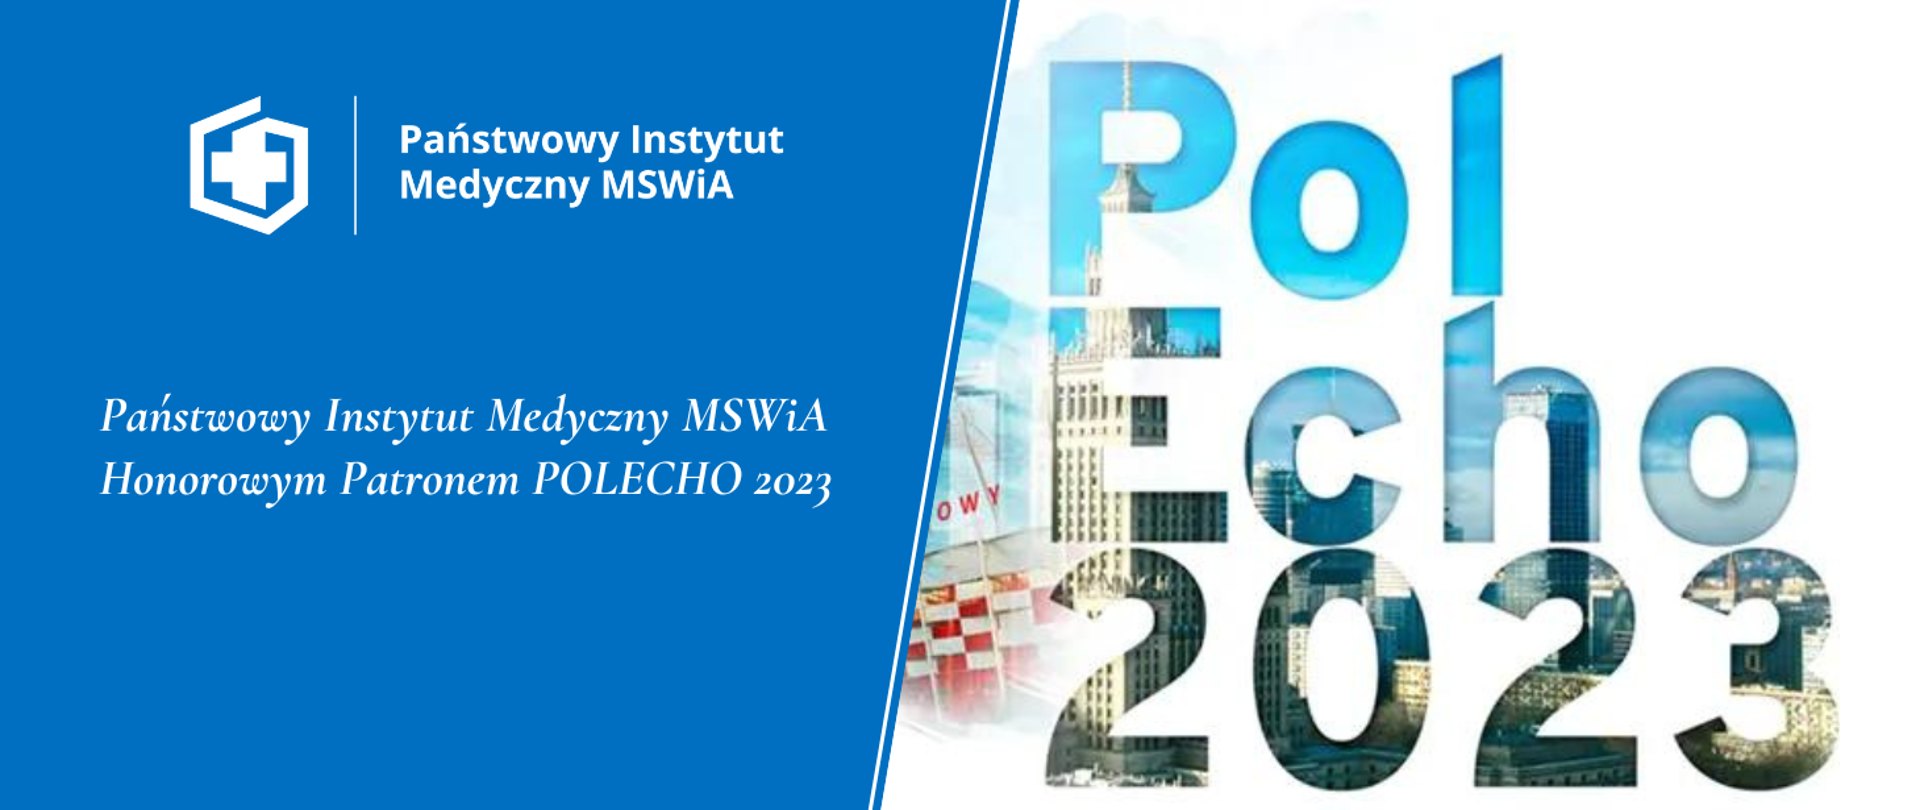 Państwowy Instytut Medyczny MSWiA Honorowym Patronem POLECHO 2023